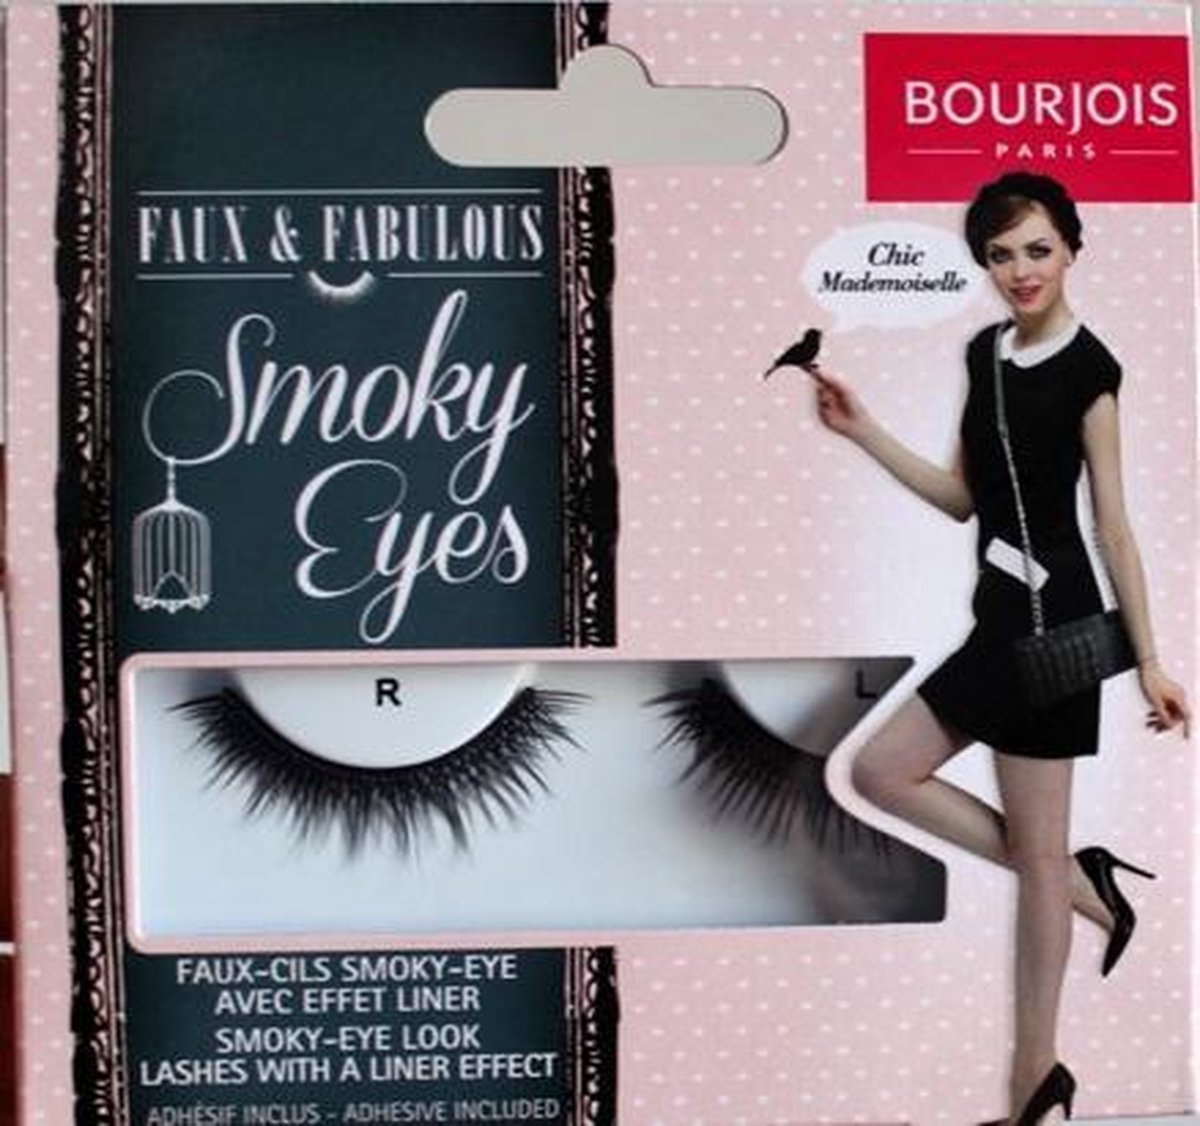 Bourjois Faux & Fabulous Eyelashes Nepwimpers Smoky Eyes